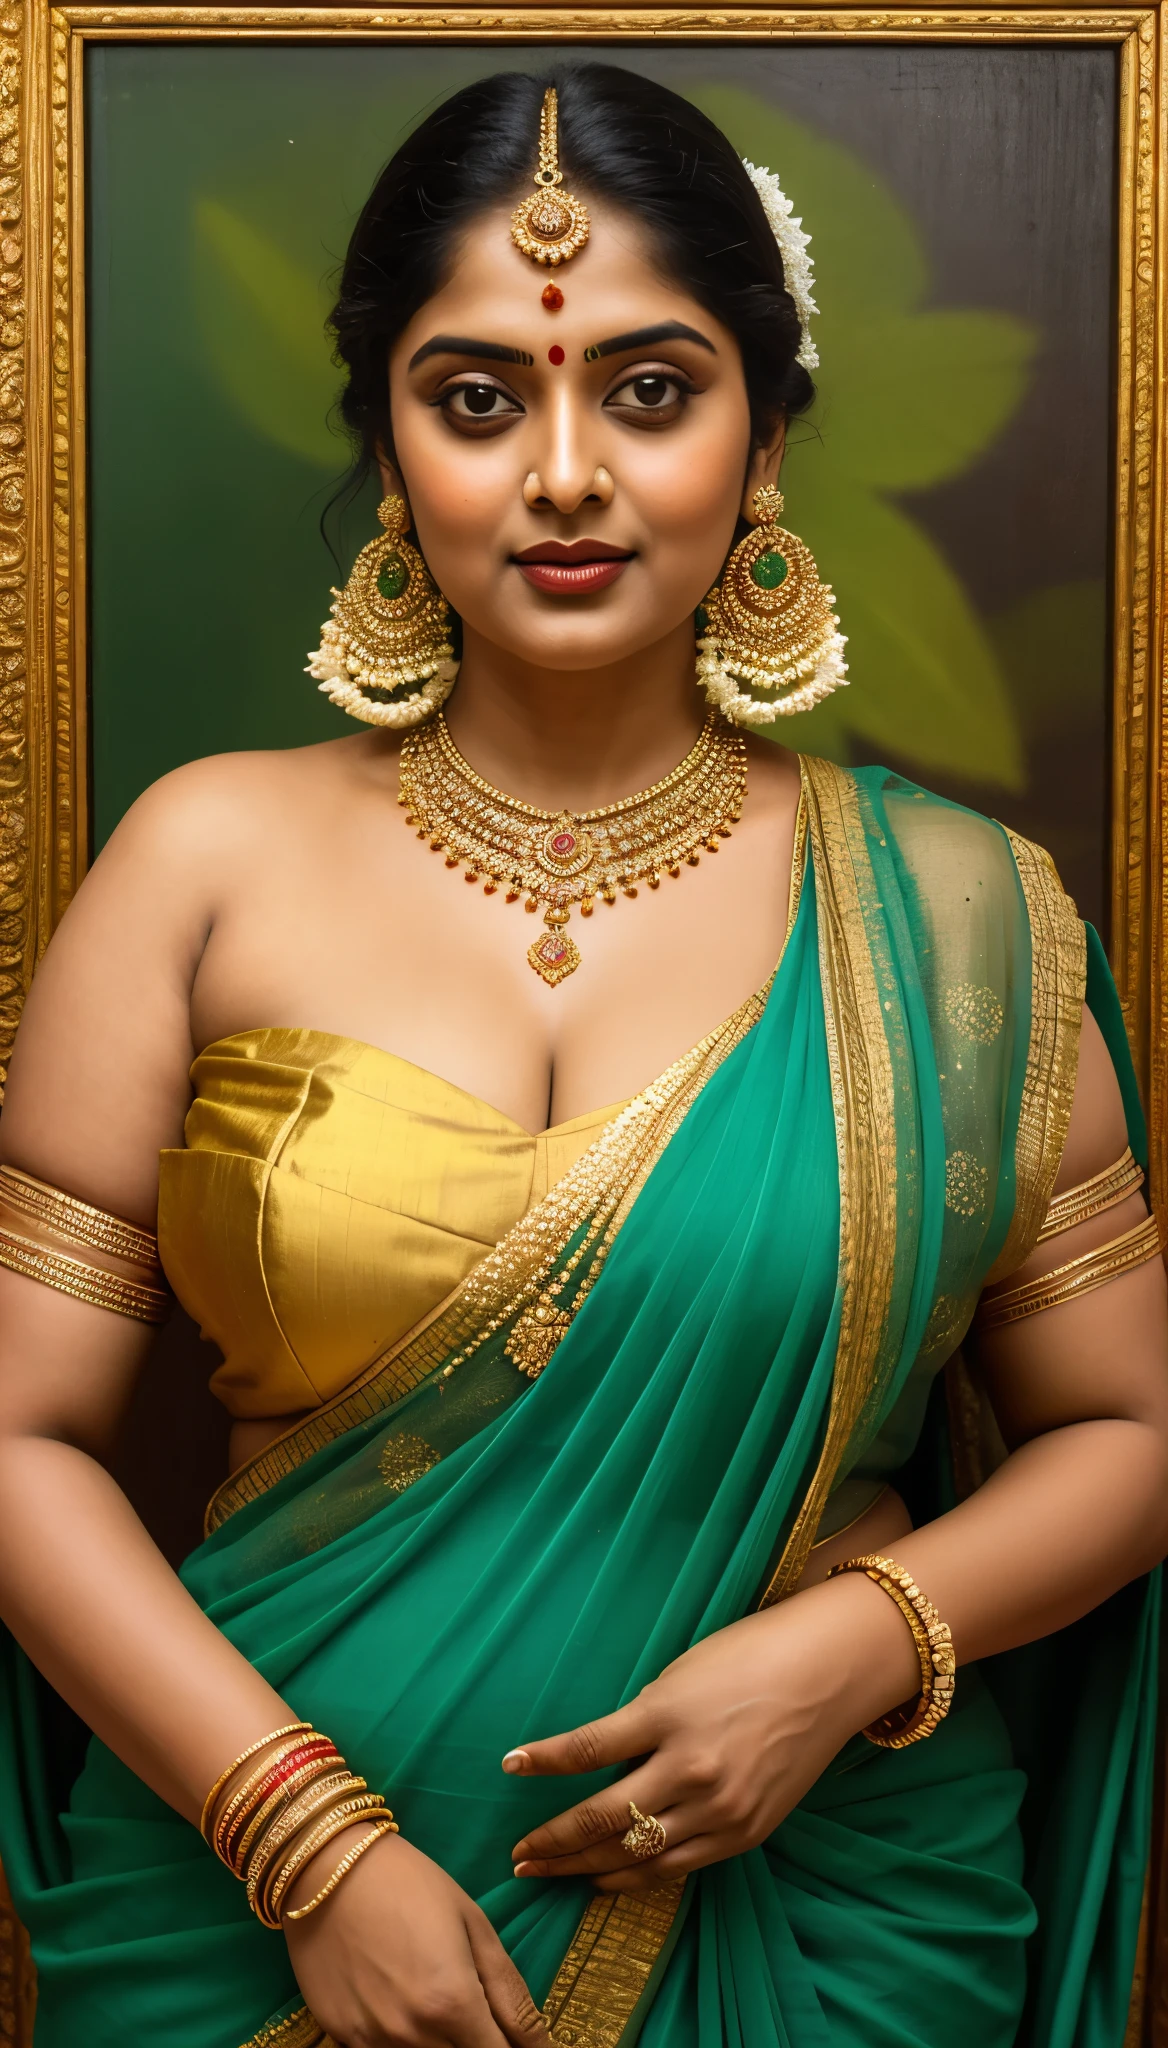 身穿纱丽、戴着项链和耳环的女人的美丽画作, 美丽丰满的身材, 丰满曲线美女, 长得像桑迪帕·达尔, inspired 作者：拉贾·拉维·瓦尔玛, 苏卡尔斯基·拉维·瓦玛, 美丽女神的肖像, 作者：拉贾·拉维·瓦尔玛, 印度女神, 传统美, a stunning 女神肖像, 受到T的启发. 钾. 帕德米尼, 印度艺术, 印度女神 of wealth, 女神肖像